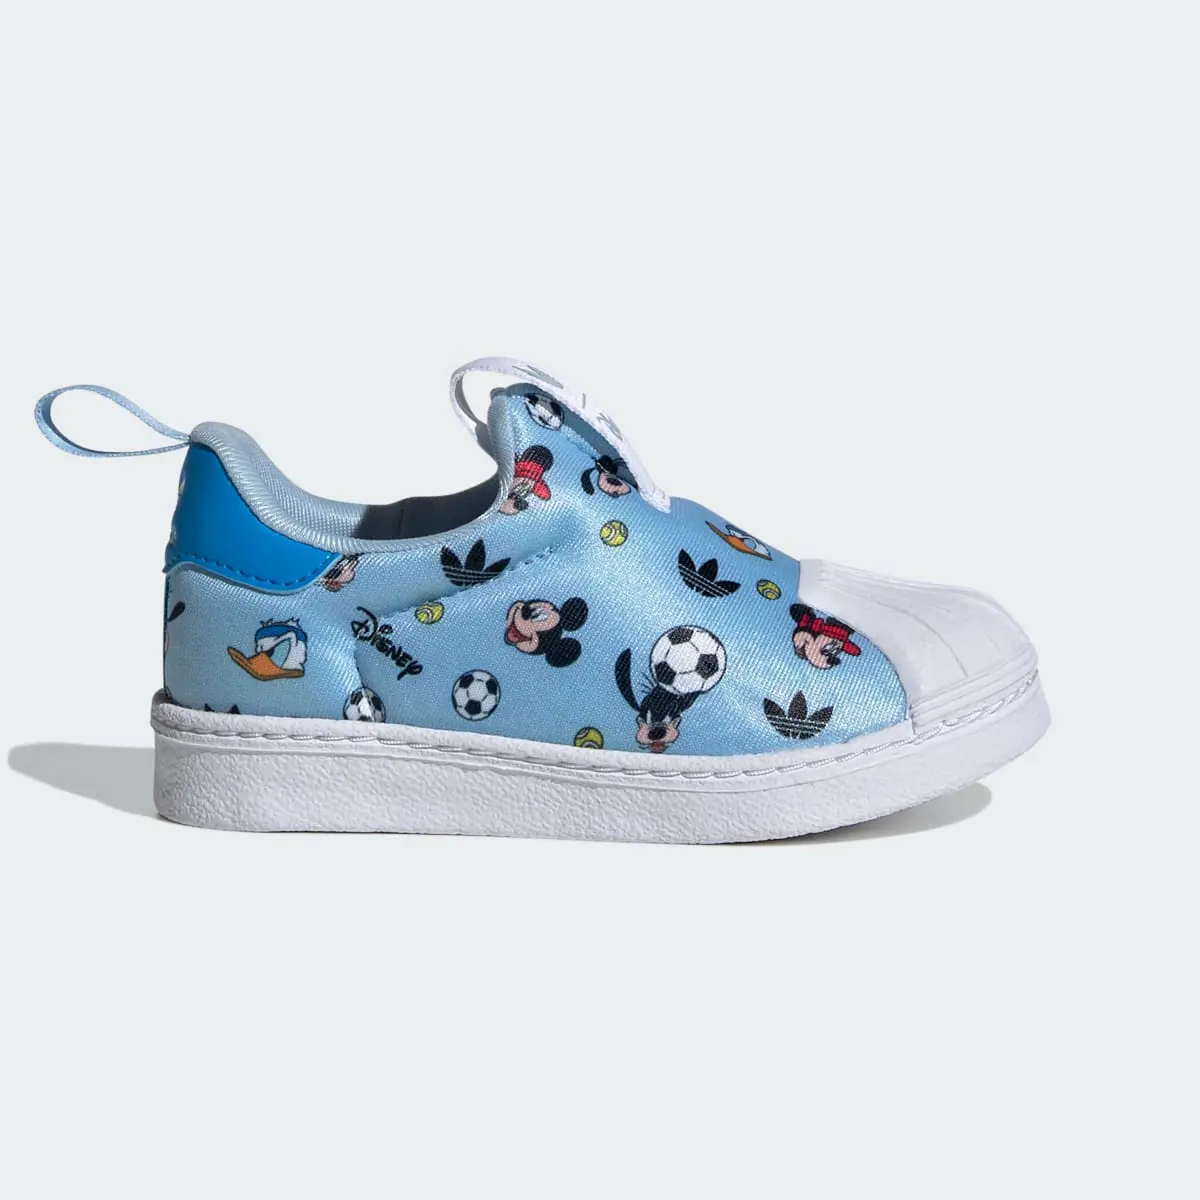 Adidas Originals x Disney Mickey Superstar 360 Shoes Kids. 2